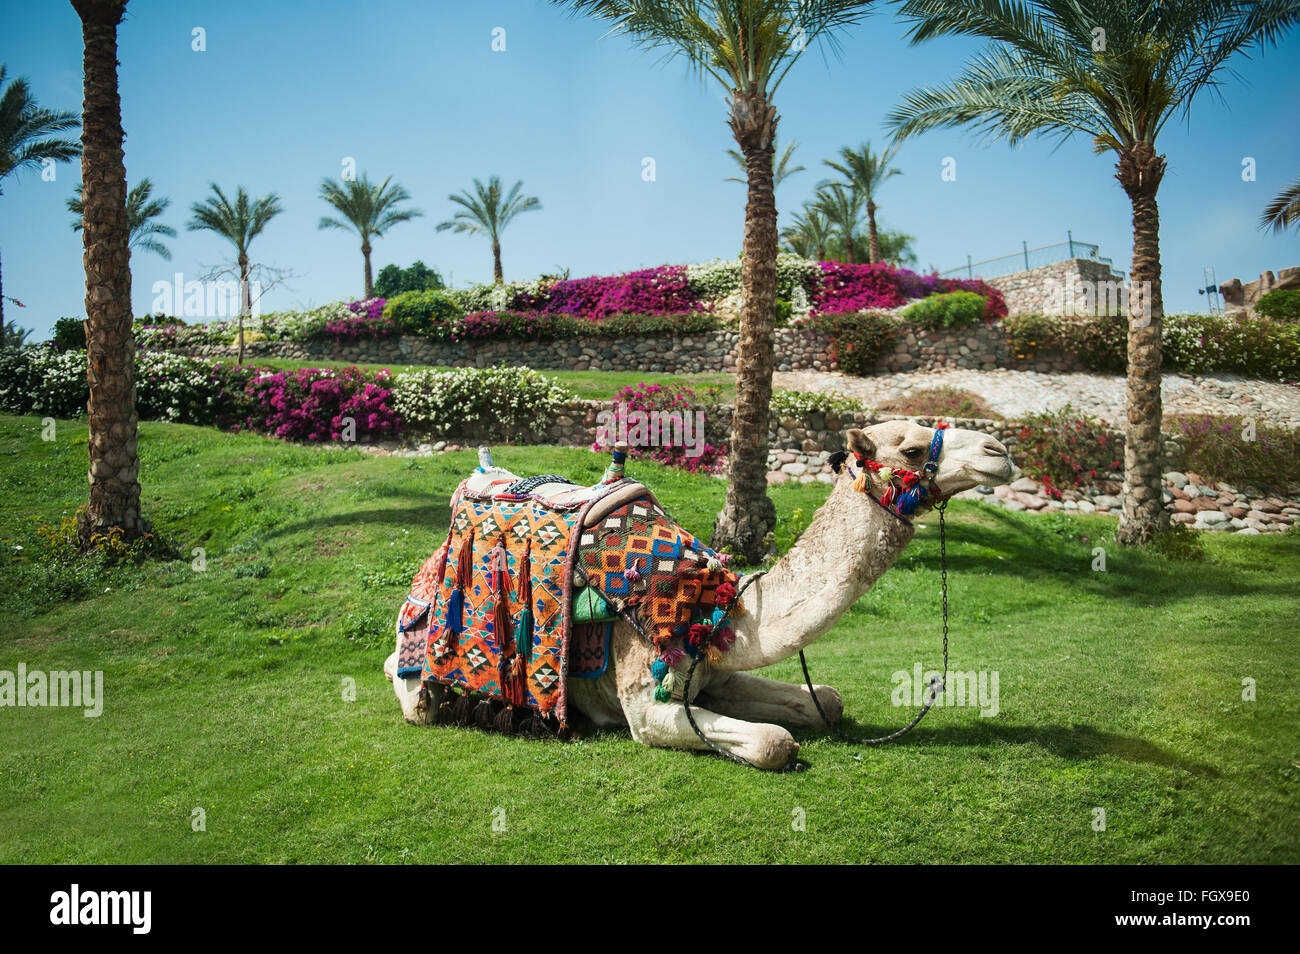 Kamel, liegend auf dem Rasen in der Nähe von Palmen Stockfoto